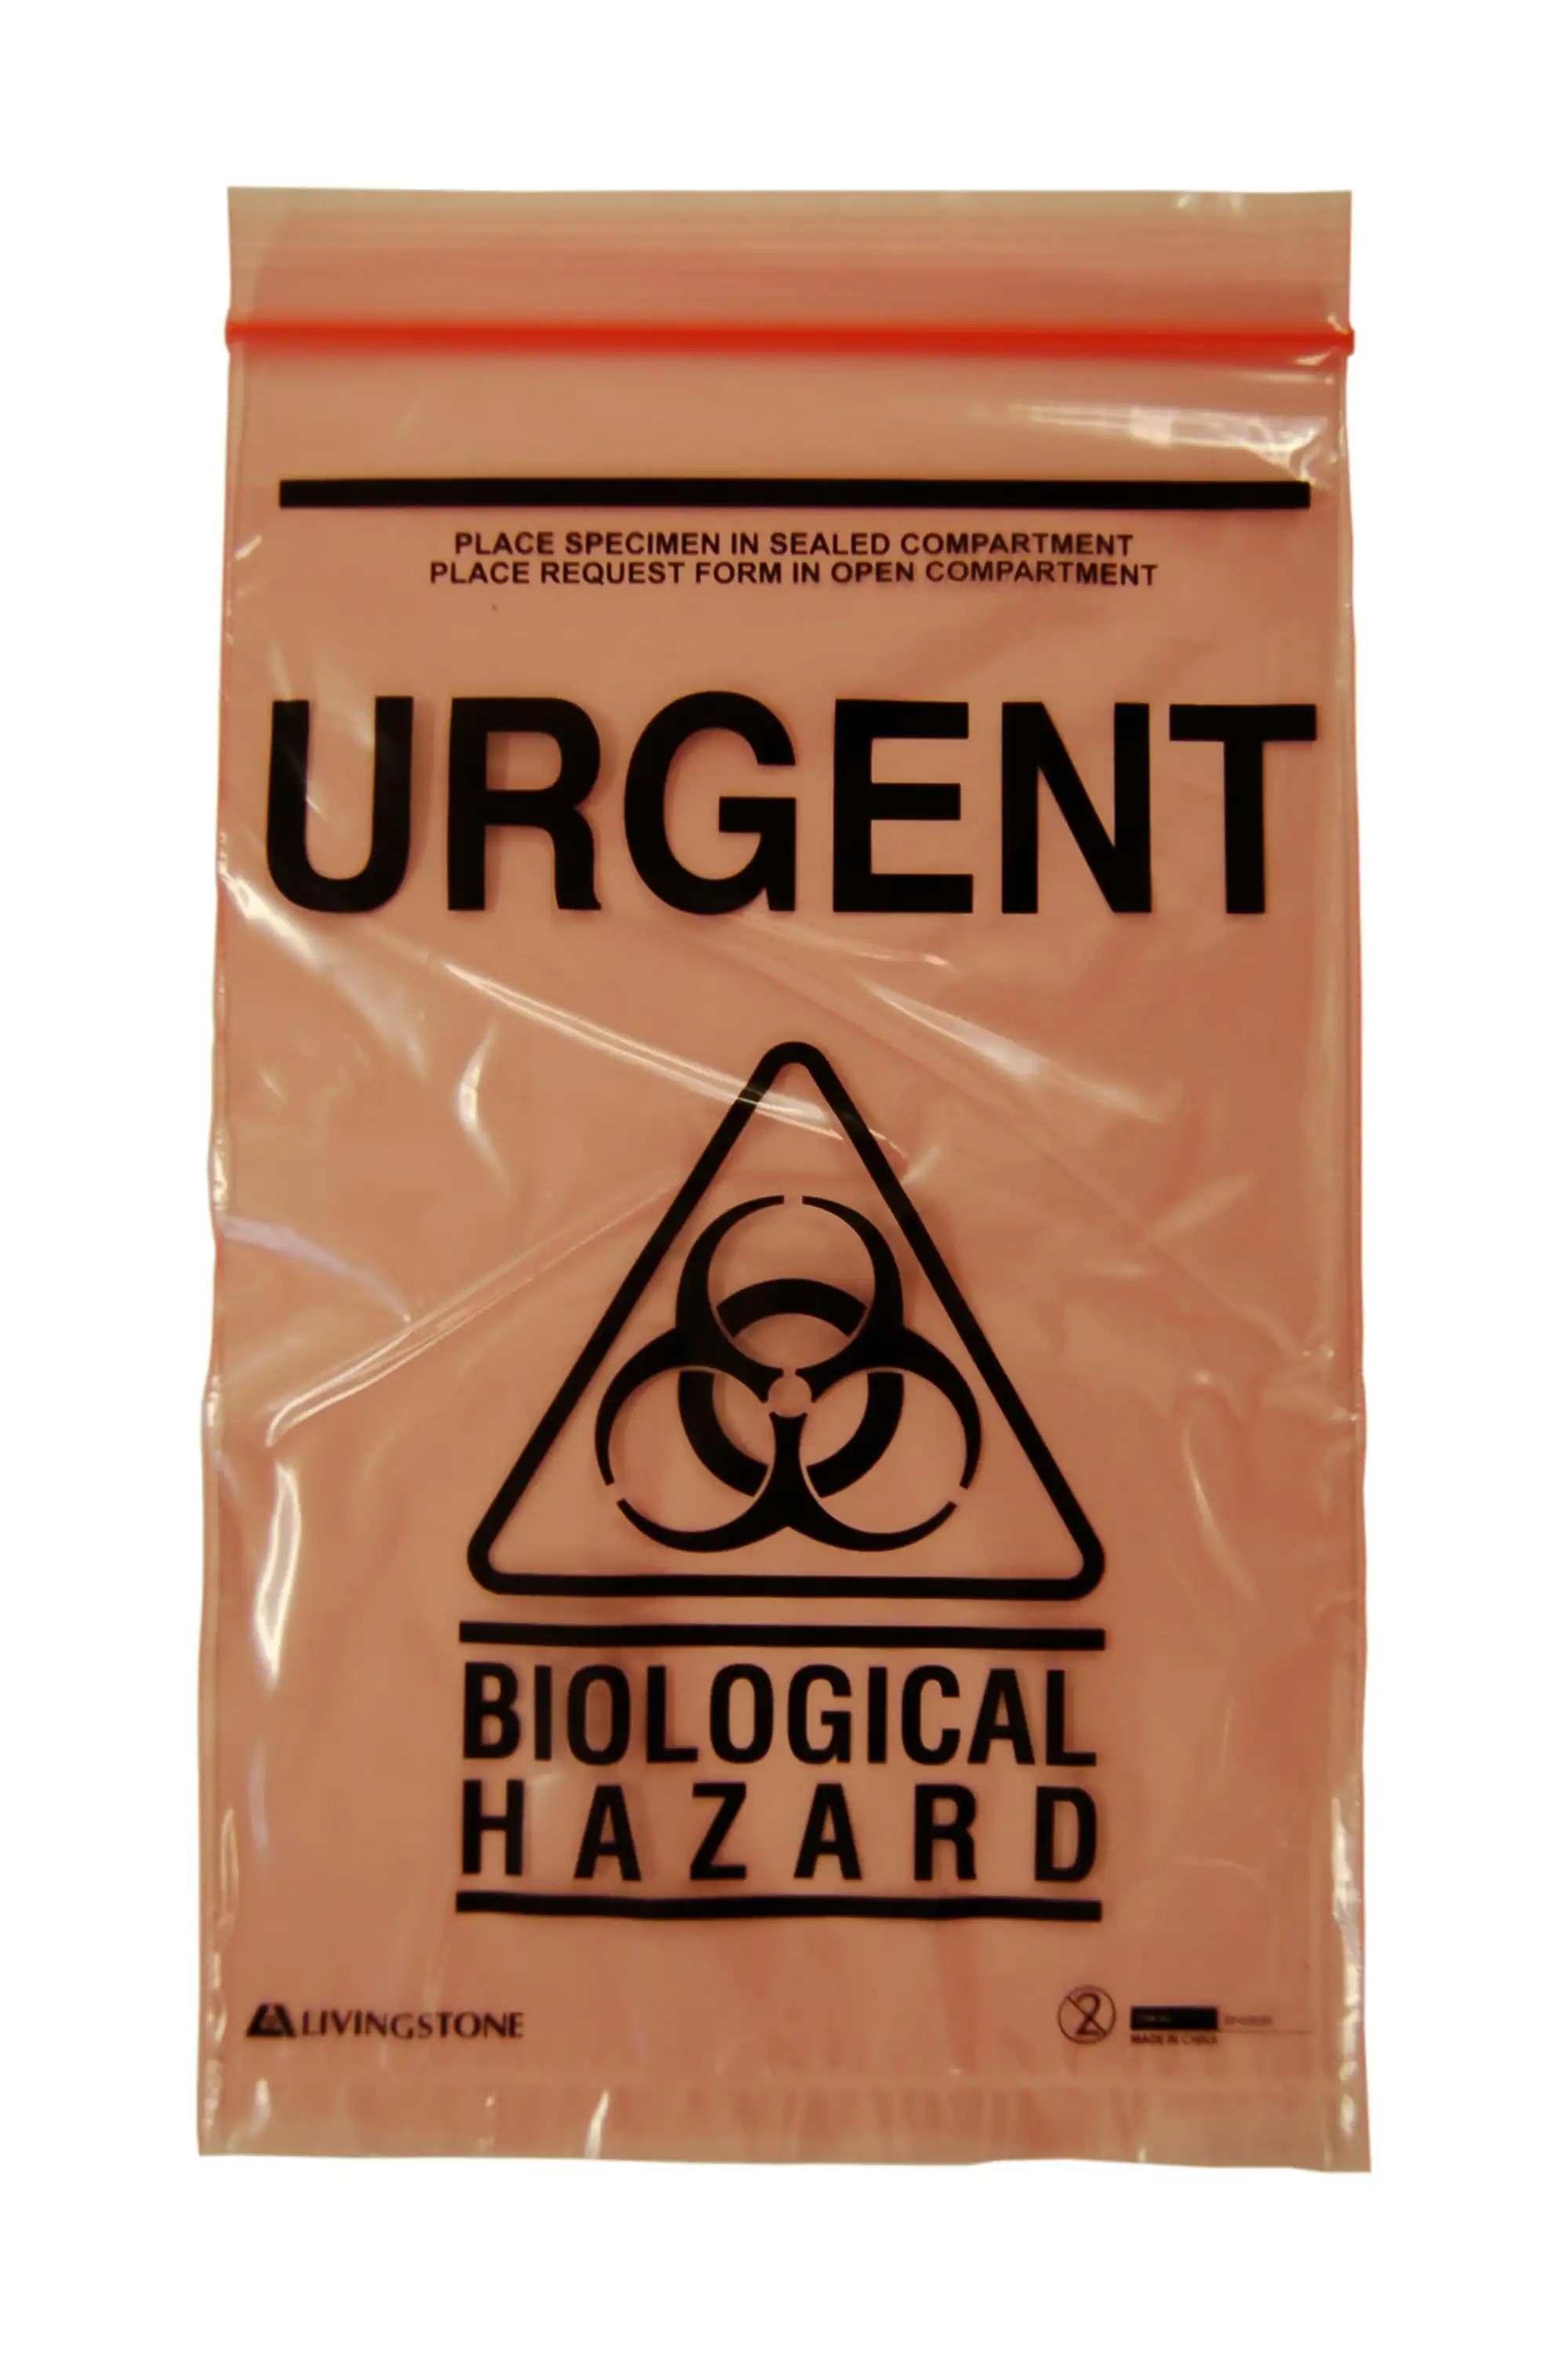 Livingstone Biohazard Specimen Bag,16x24.5cm,3-Ply,2 Compt,Zip Compt,2-Ply,45um,Pouch Compt,1-Ply,32um,w/ Urgent Label Red Tint,2000/Ctn x3